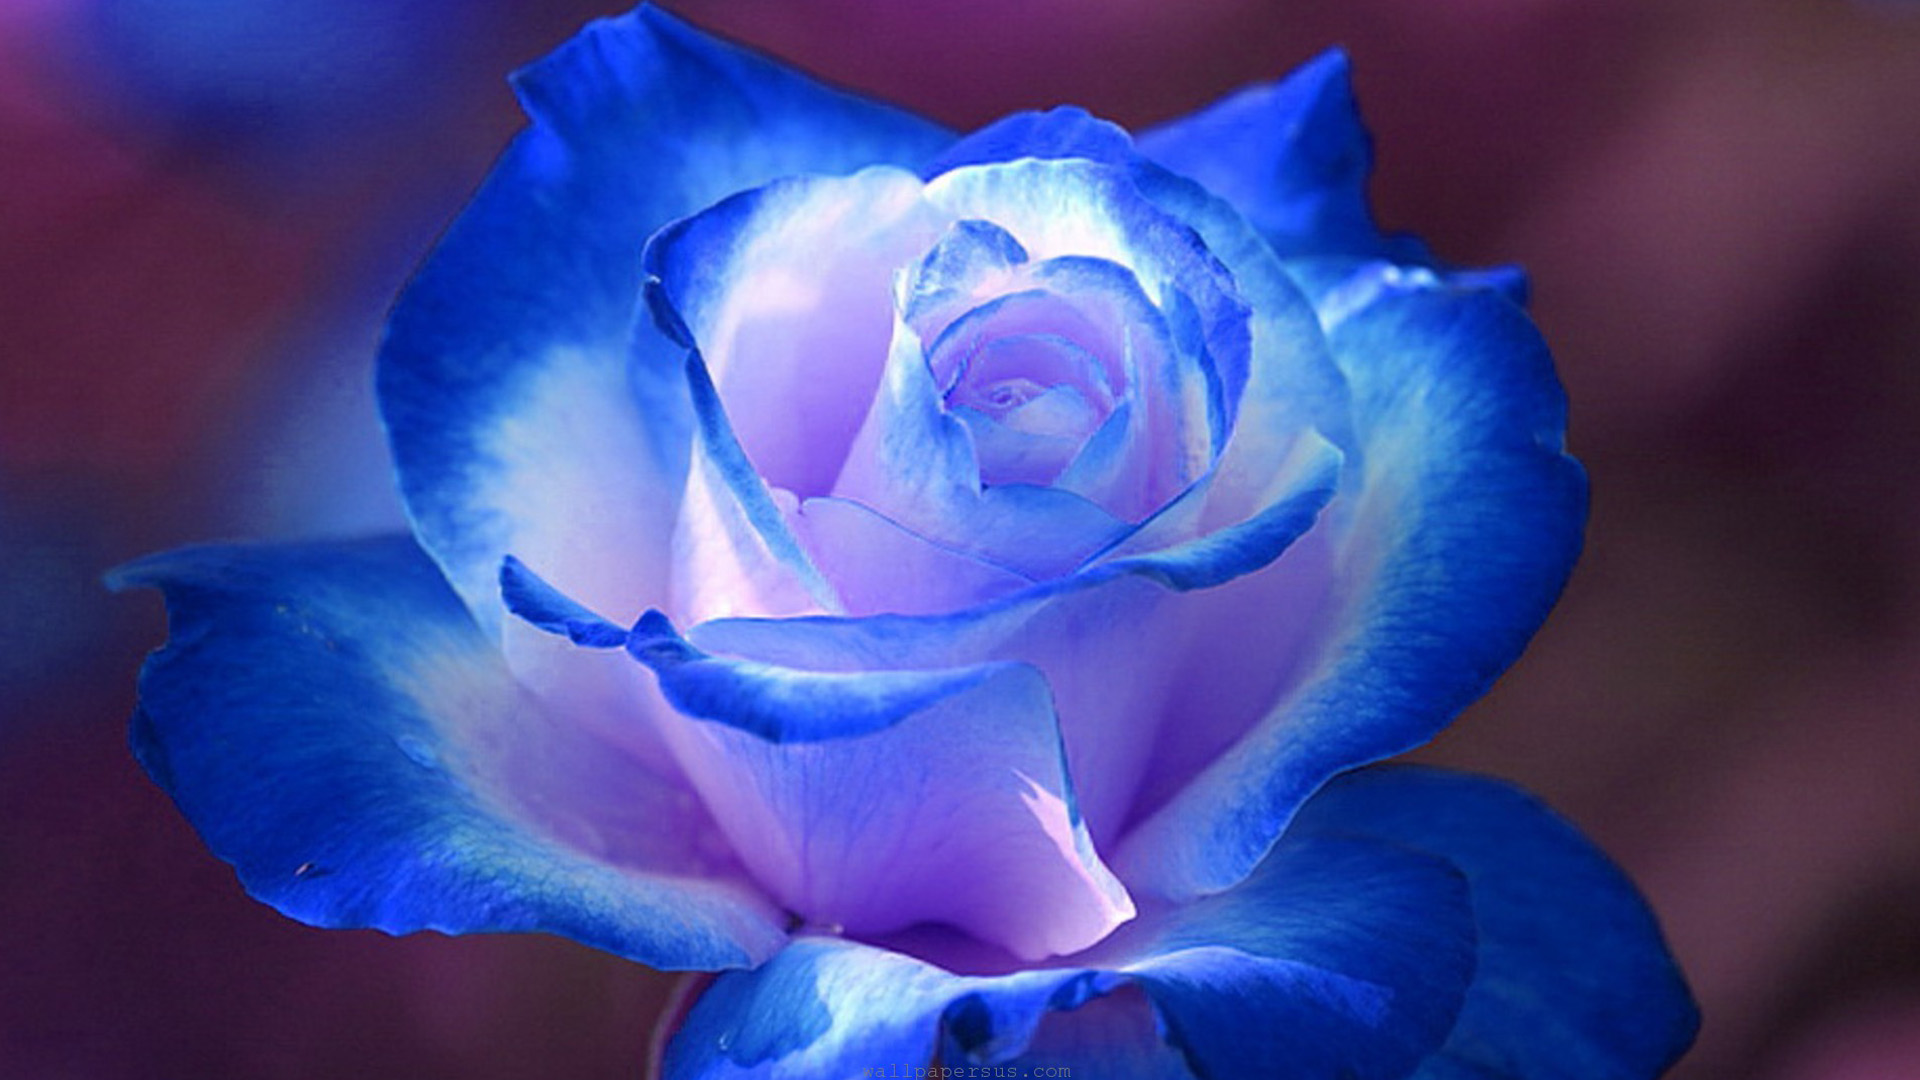 Breathtaking Blue Rose Wallpapers, Rose Flower images, Rose